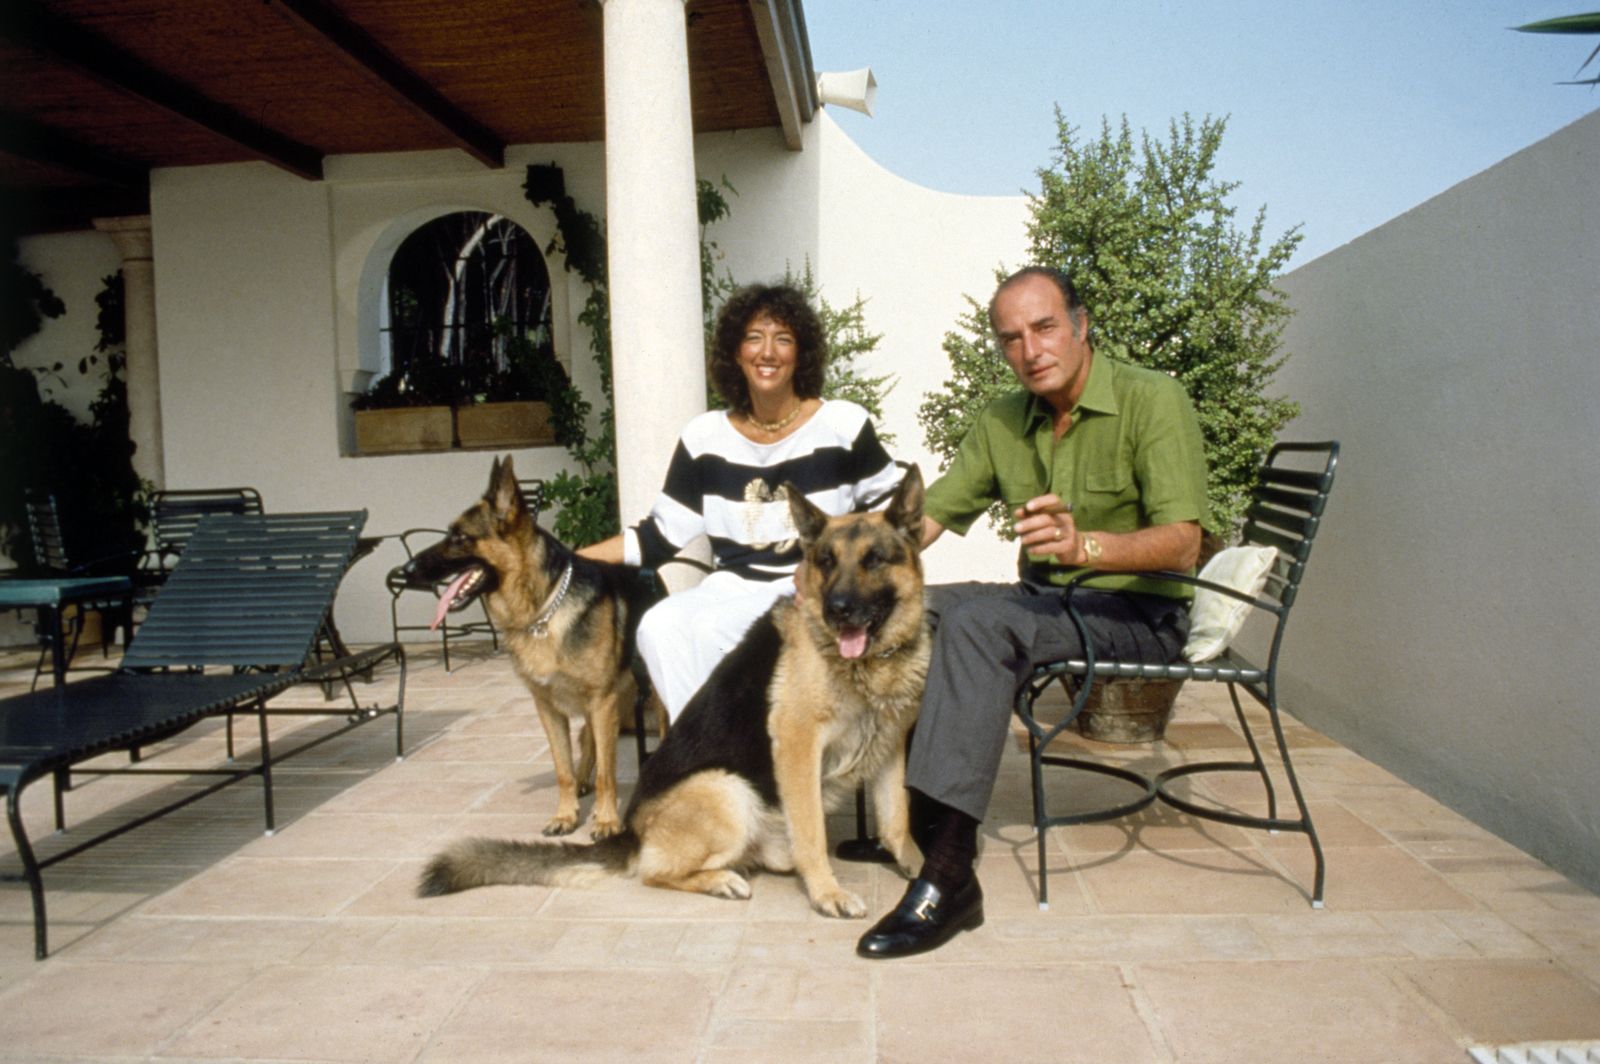 Marc Rich med sin kone i hjemmet i Spanien. Foto: All Over Press/Jim Berry